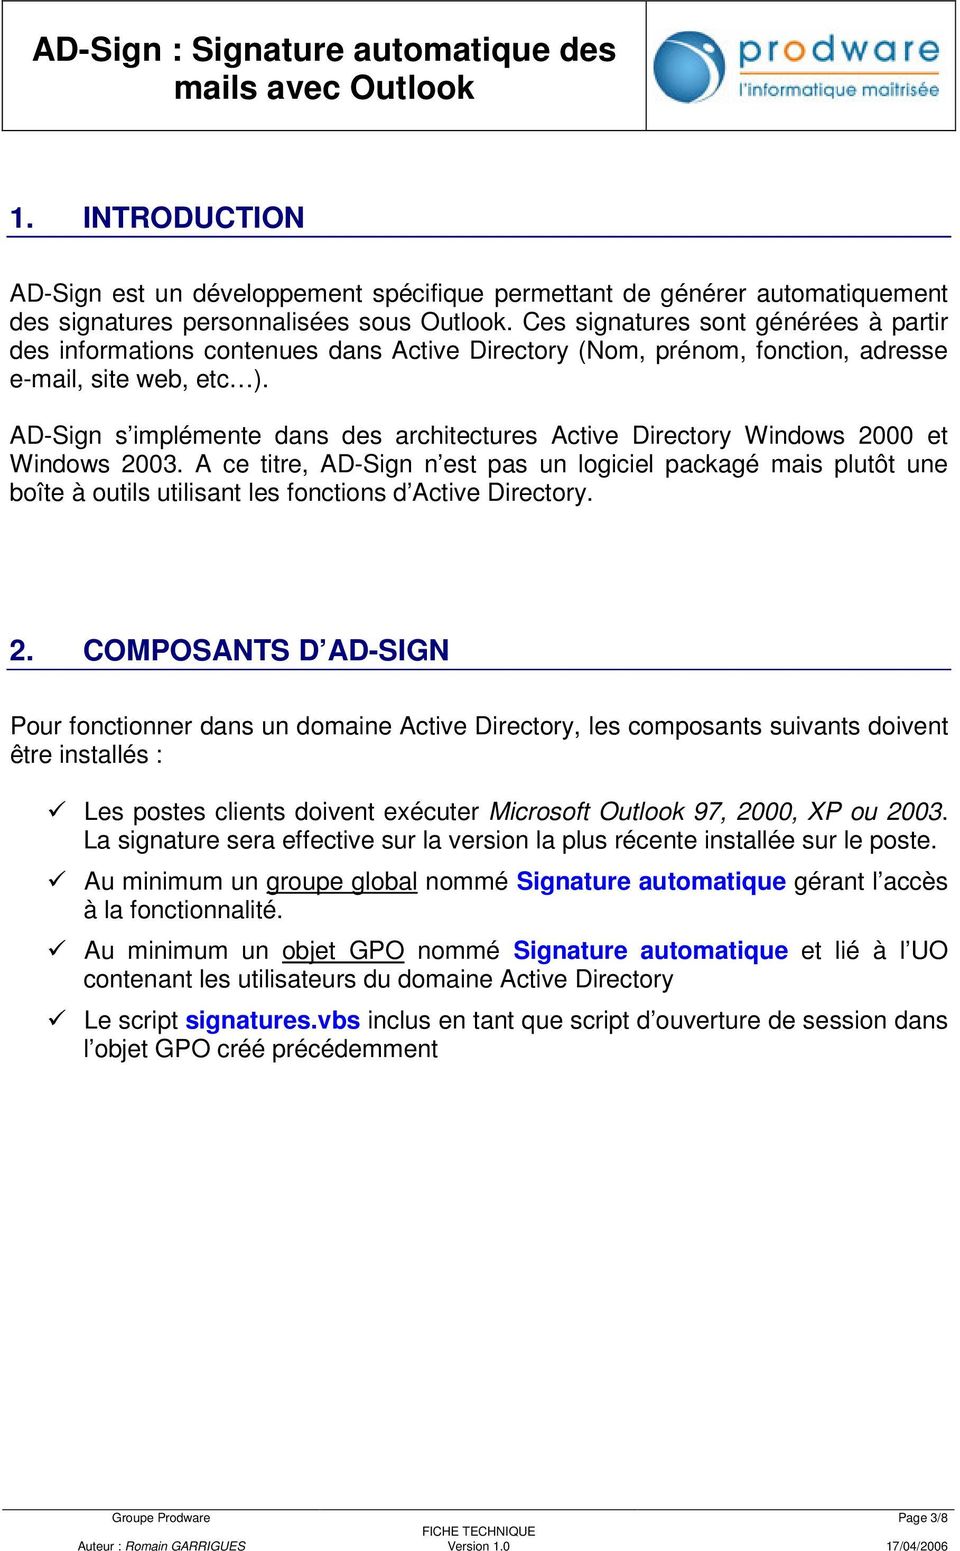 AD-Sign s implémente dans des architectures Active Directory Windows 2000 et Windows 2003.